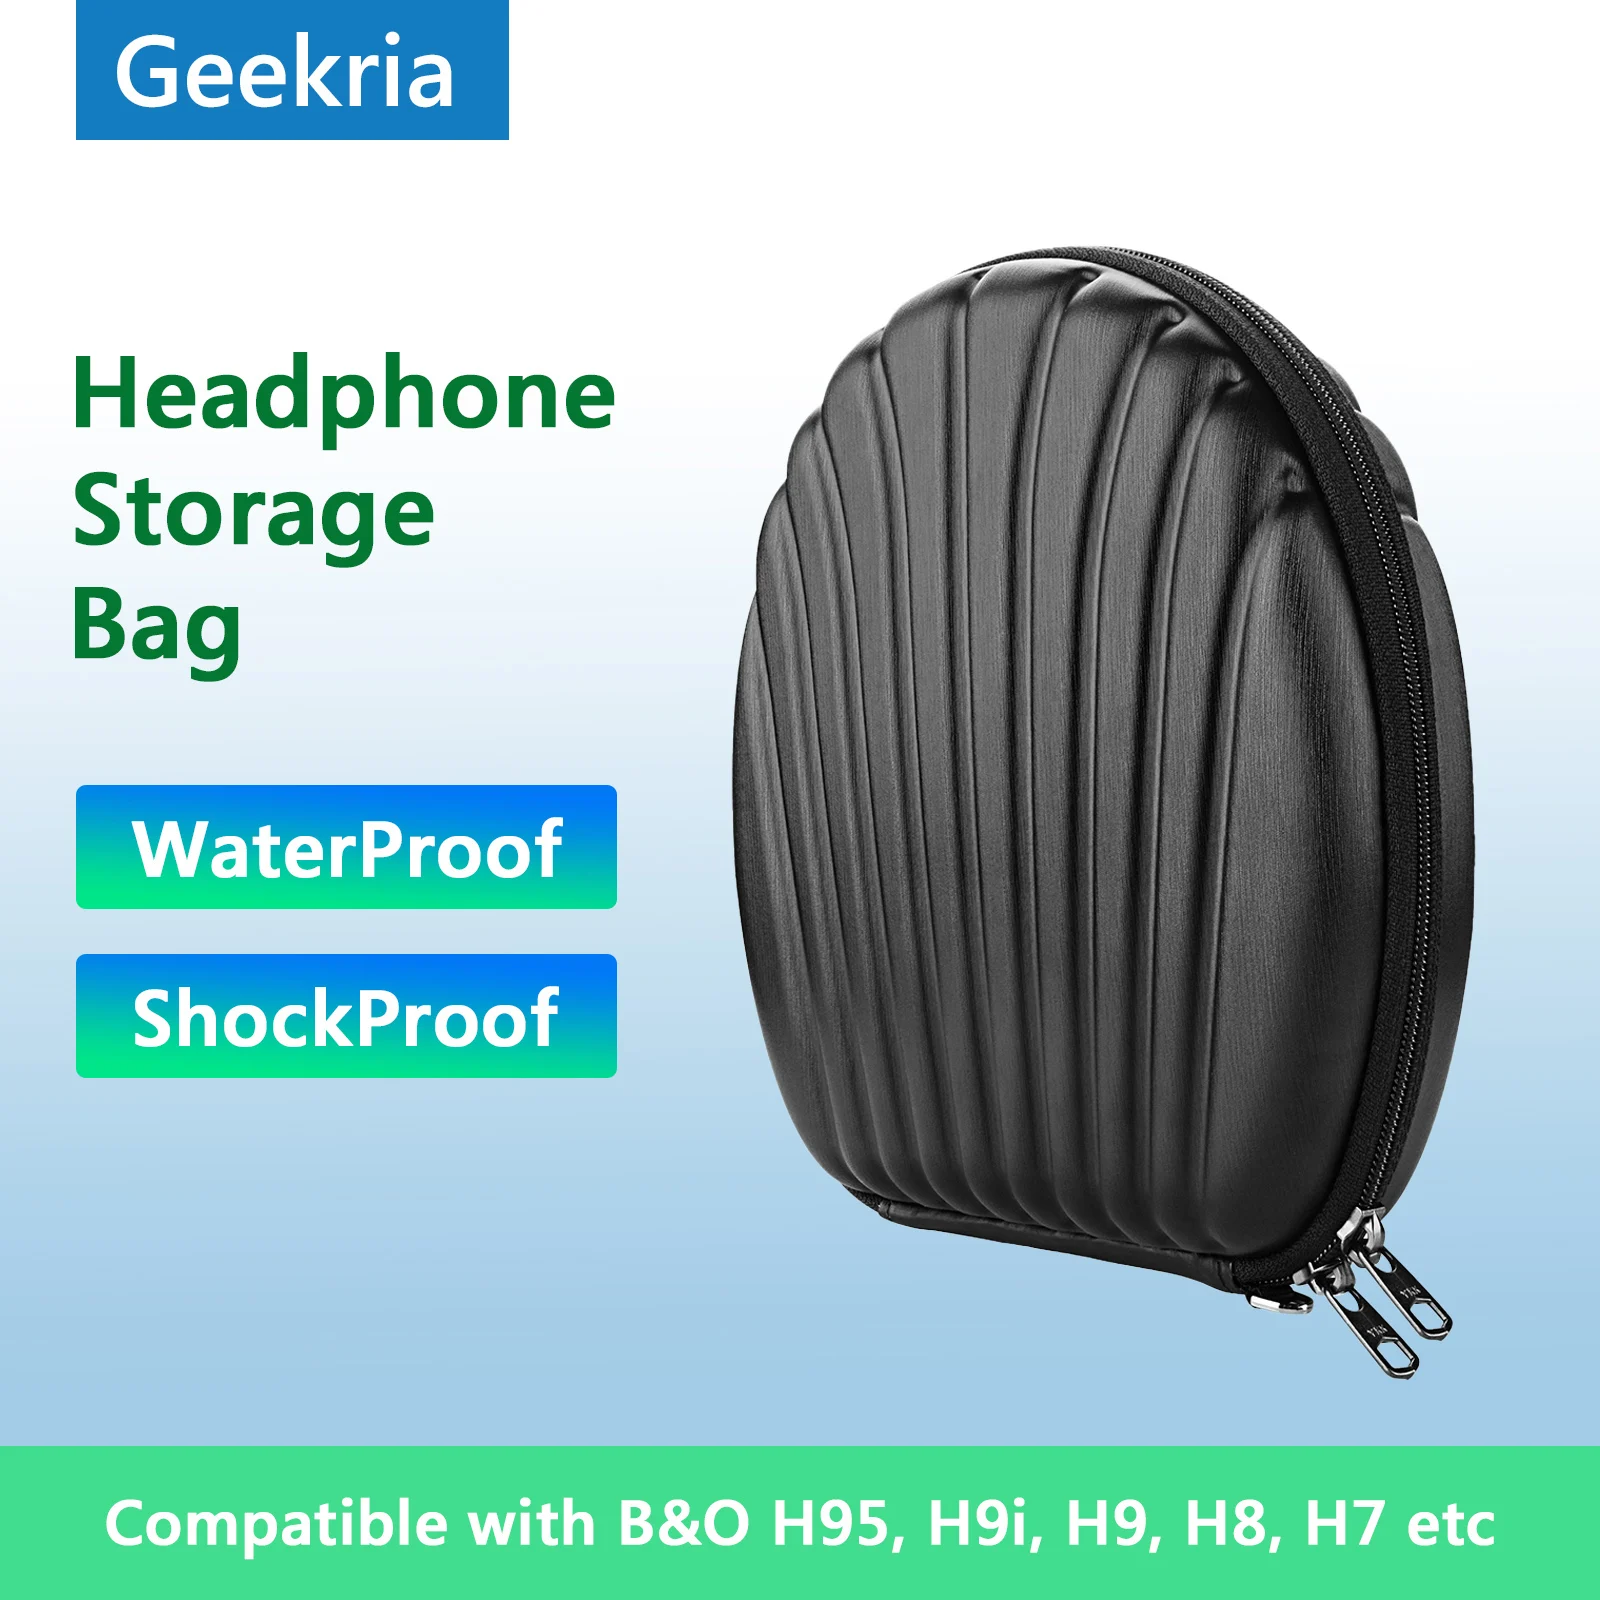 

Чехол Geekria чехол для наушников B & O H95, H9i, H9, H8, H7 Bang & Olufsen, Портативная сумка для наушников Bluetooth гарнитуры для хранения